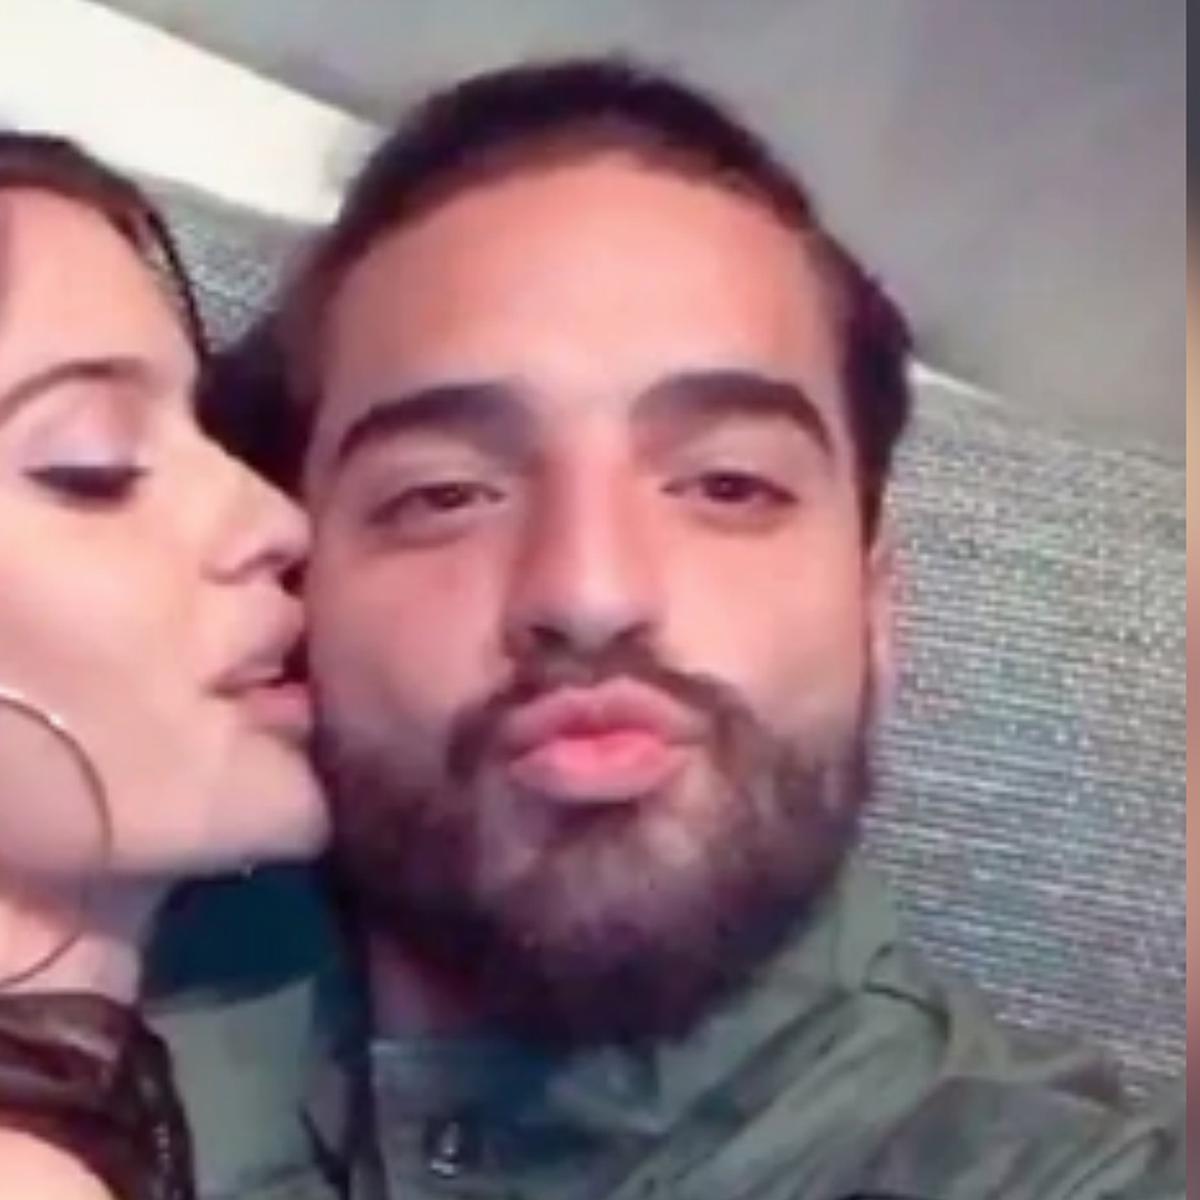 Maluma y el cariñoso video junto a su novia que compartió en Instagram  [FOTOS] | CELEBRITIES 